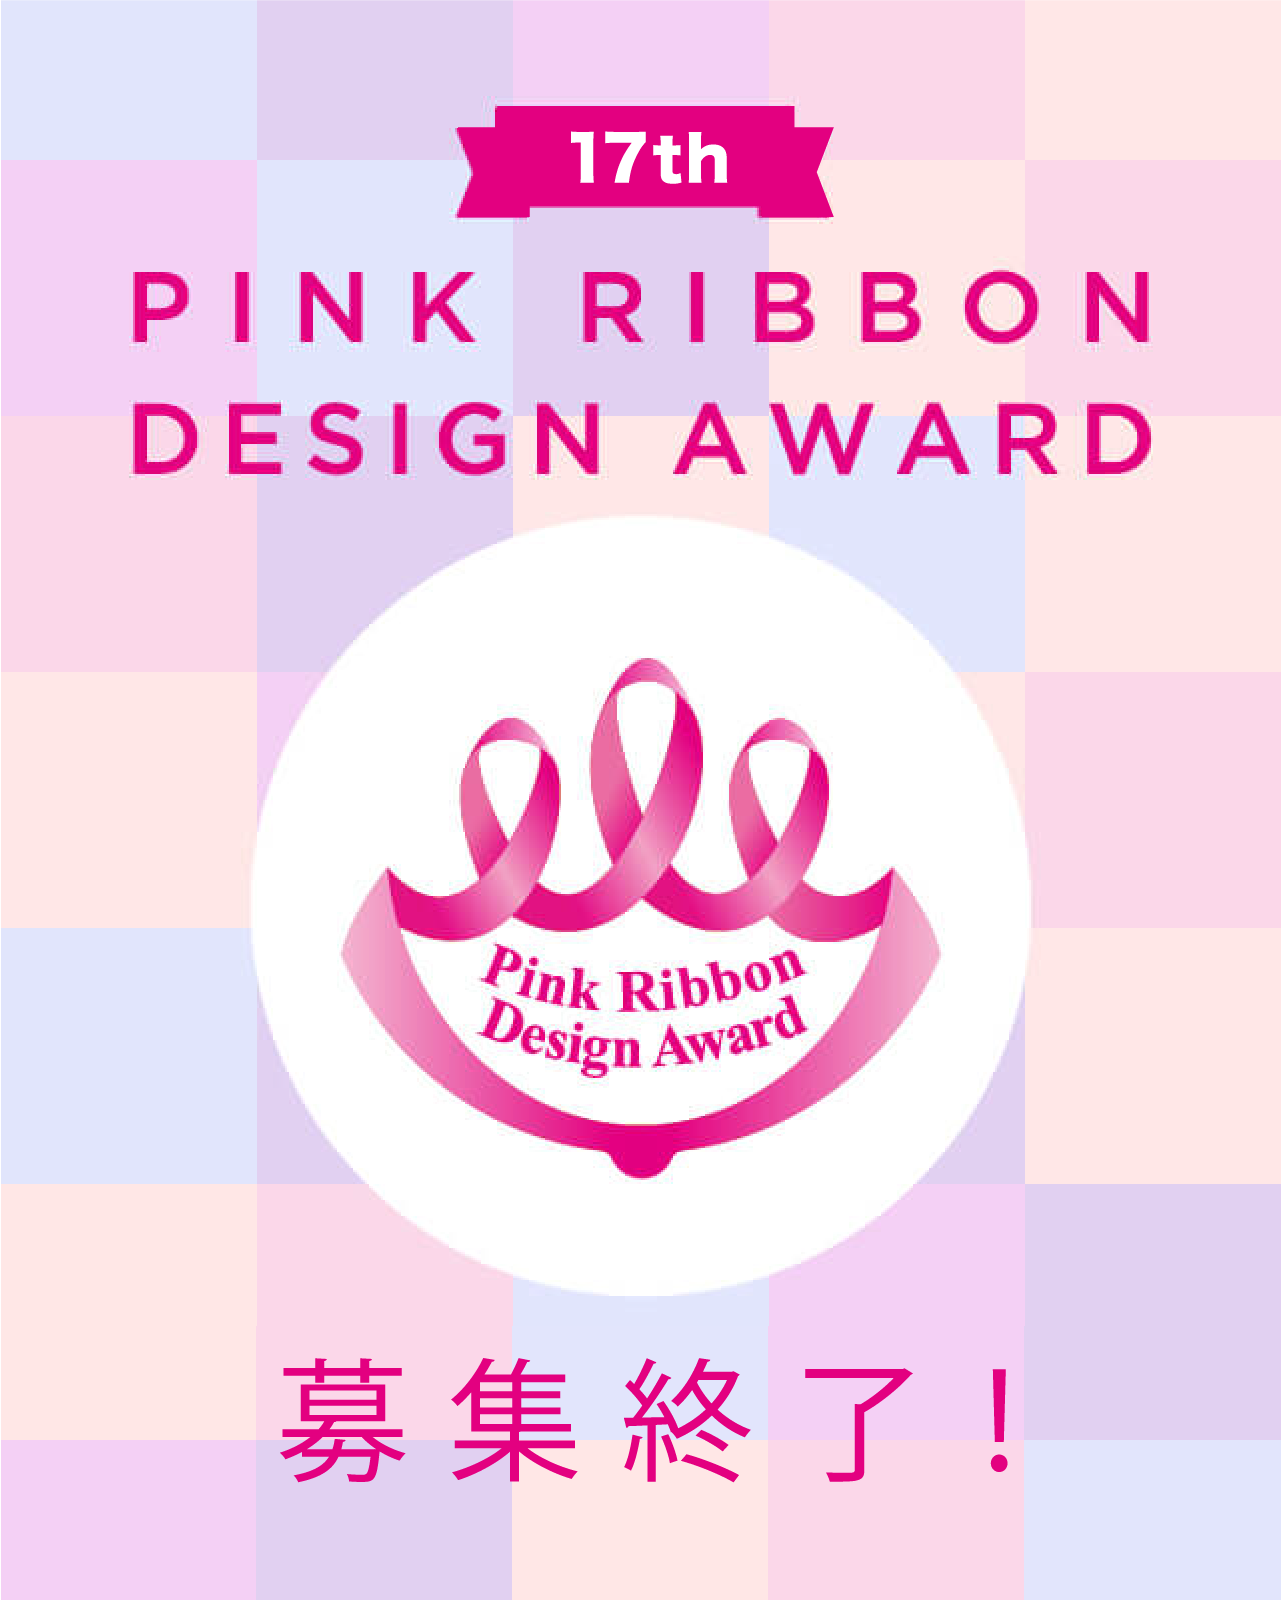 ピンクリボンフェスティバル公式サイト ピンクリボンフェスティバルのオフィシャルサイトです 乳がんについて ピンク リボンフェスティバルの概要 全国的な活動の様子やイベント情報などをお知らせします